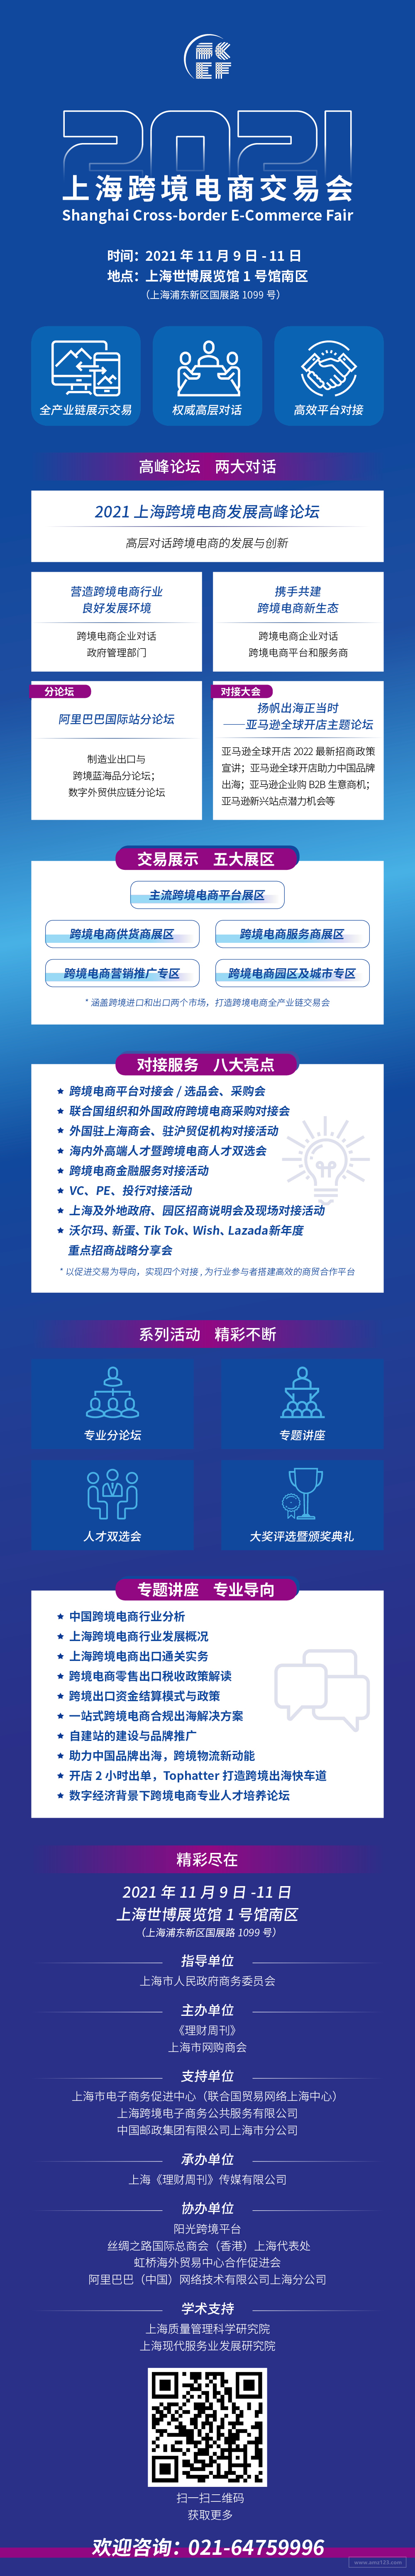 2021上海跨境电商交易会